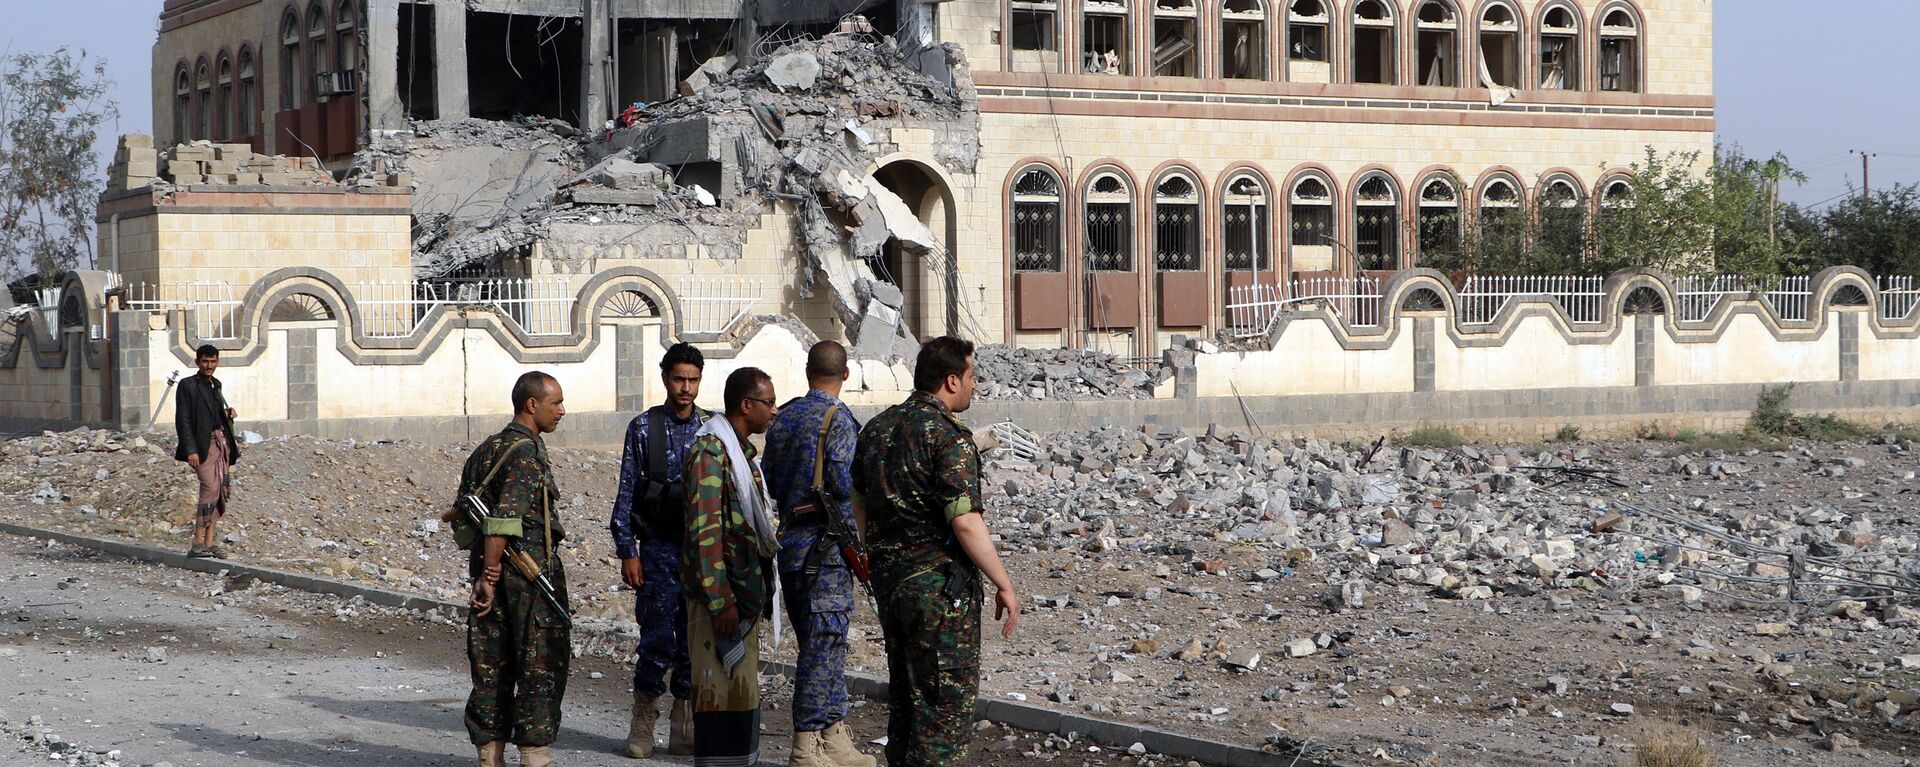 Toà nhà công sở ở thành phố Sa'ada, Yemen bị hư hại do cuộc không kích từ phía Saudi Arabia. - Sputnik Việt Nam, 1920, 27.03.2022